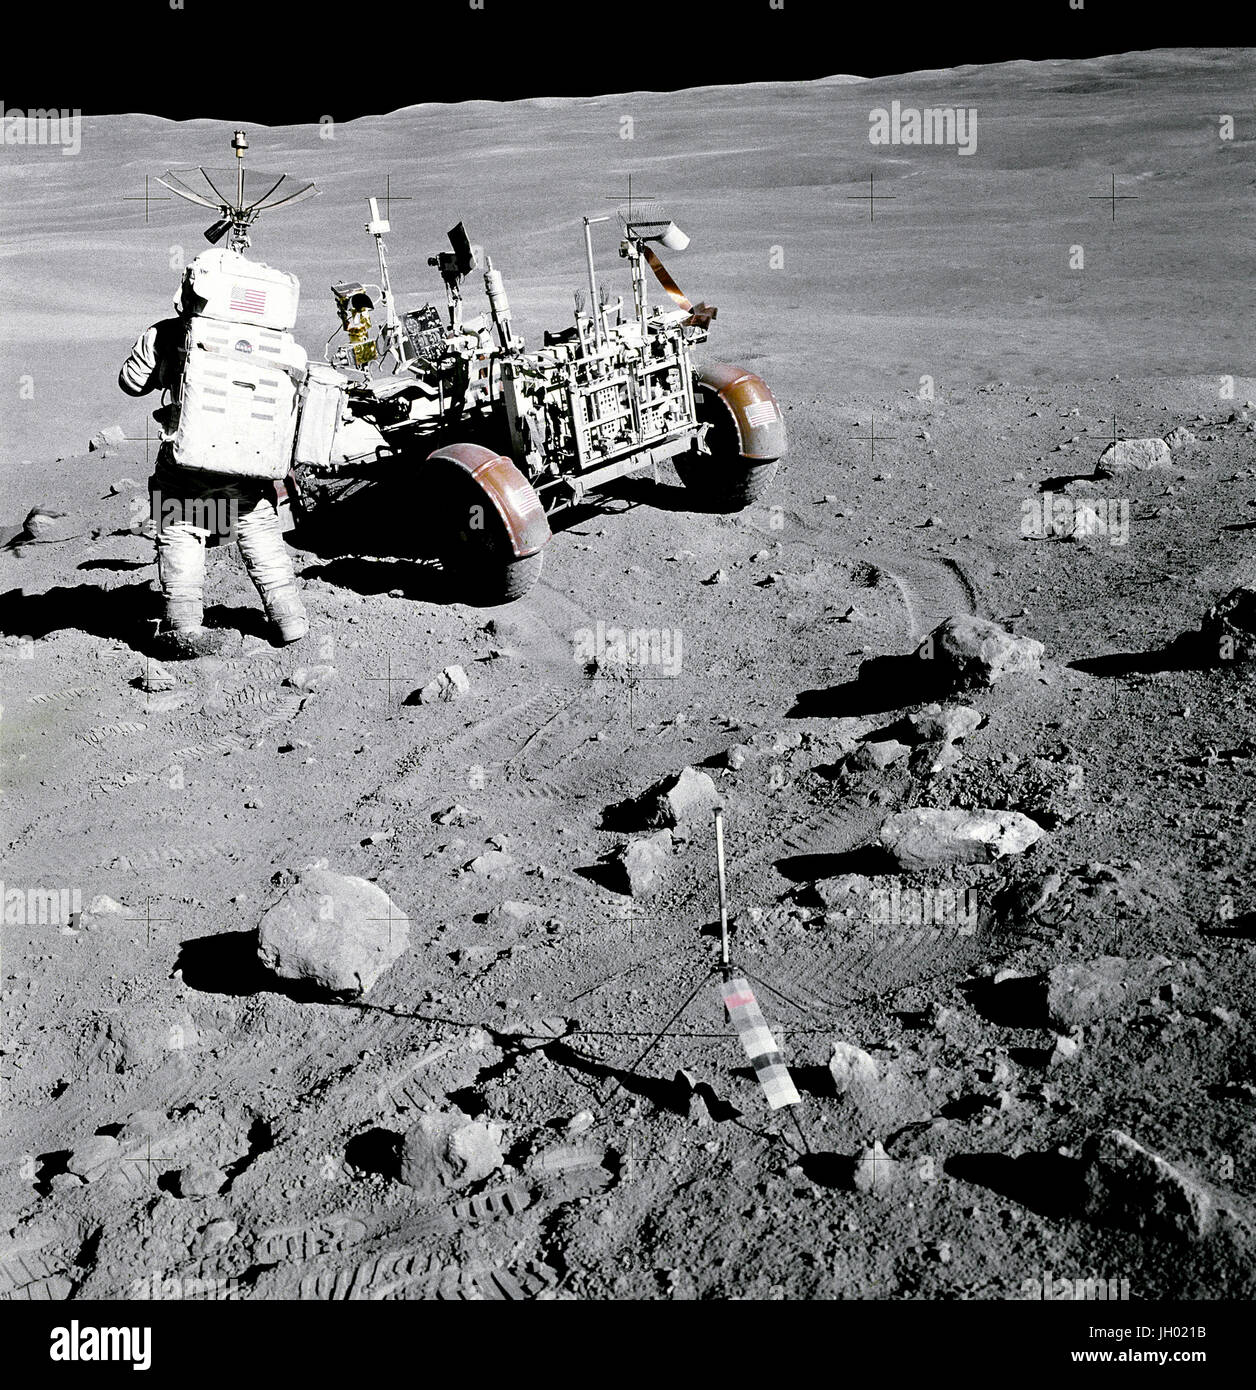 Apollo 16 Astronaut Charles M. Duke Jr., Pilot der Mondlandefähre "Orion", steht in der Nähe der Rover, Lunar Roving Vehicle (LRV) in der Station Nr. 4, in der Nähe von Stone Mountain, während die zweite Apollo 16 Extravehicular Activity (EVA-2) am Landeplatz Descartes. Lichtstrahlen aus Süden Ray-Krater sehen oben links. Gnomon, als fotografische Referenz dient zum lokalen vertikaler Sonnenwinkel, Graustufen-, und Mond zu etablieren, wird im Vordergrund Center bereitgestellt. Beachten Sie die Kantigkeit der Felsen in der Umgebung. Fotograf: NASA / John Young Stockfoto